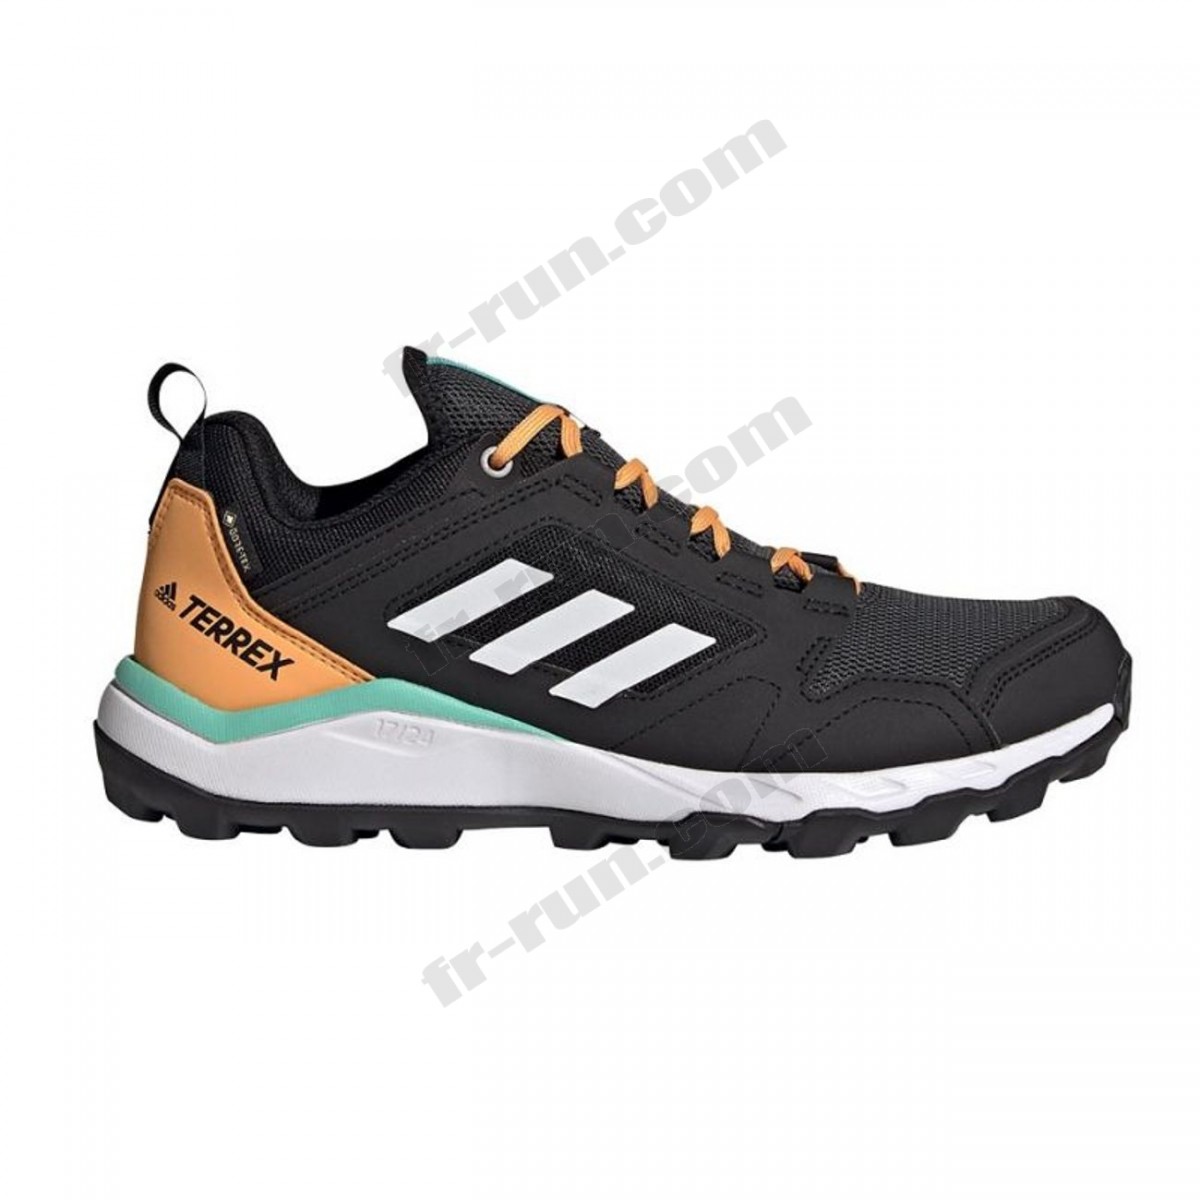 Adidas/Course à pied femme ADIDAS Chaussures de trail femme adidas Terrex Agravic GORE-TEX √ Nouveau style √ Soldes - -0